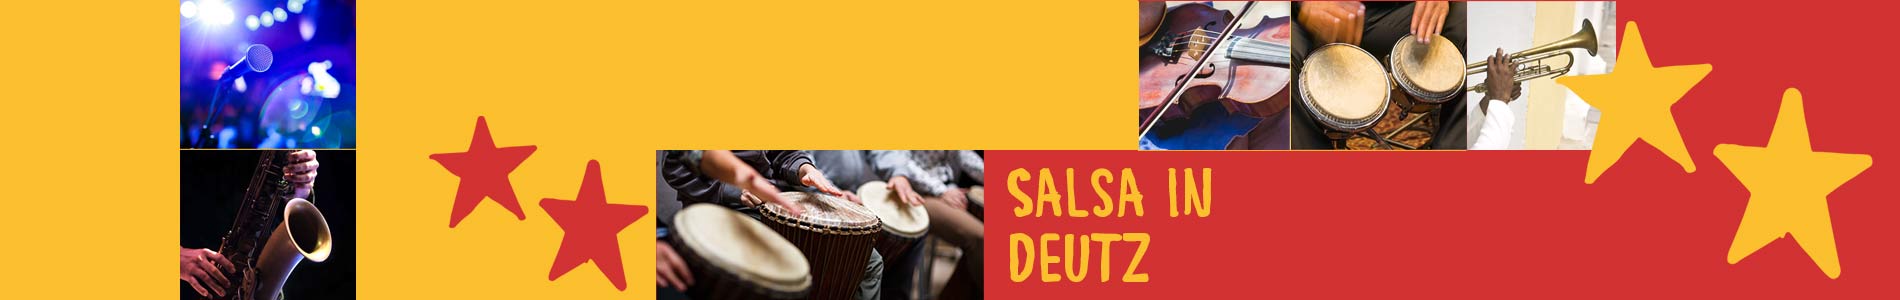 Salsa in Deutz – Salsa lernen und tanzen, Tanzkurse, Partys, Veranstaltungen